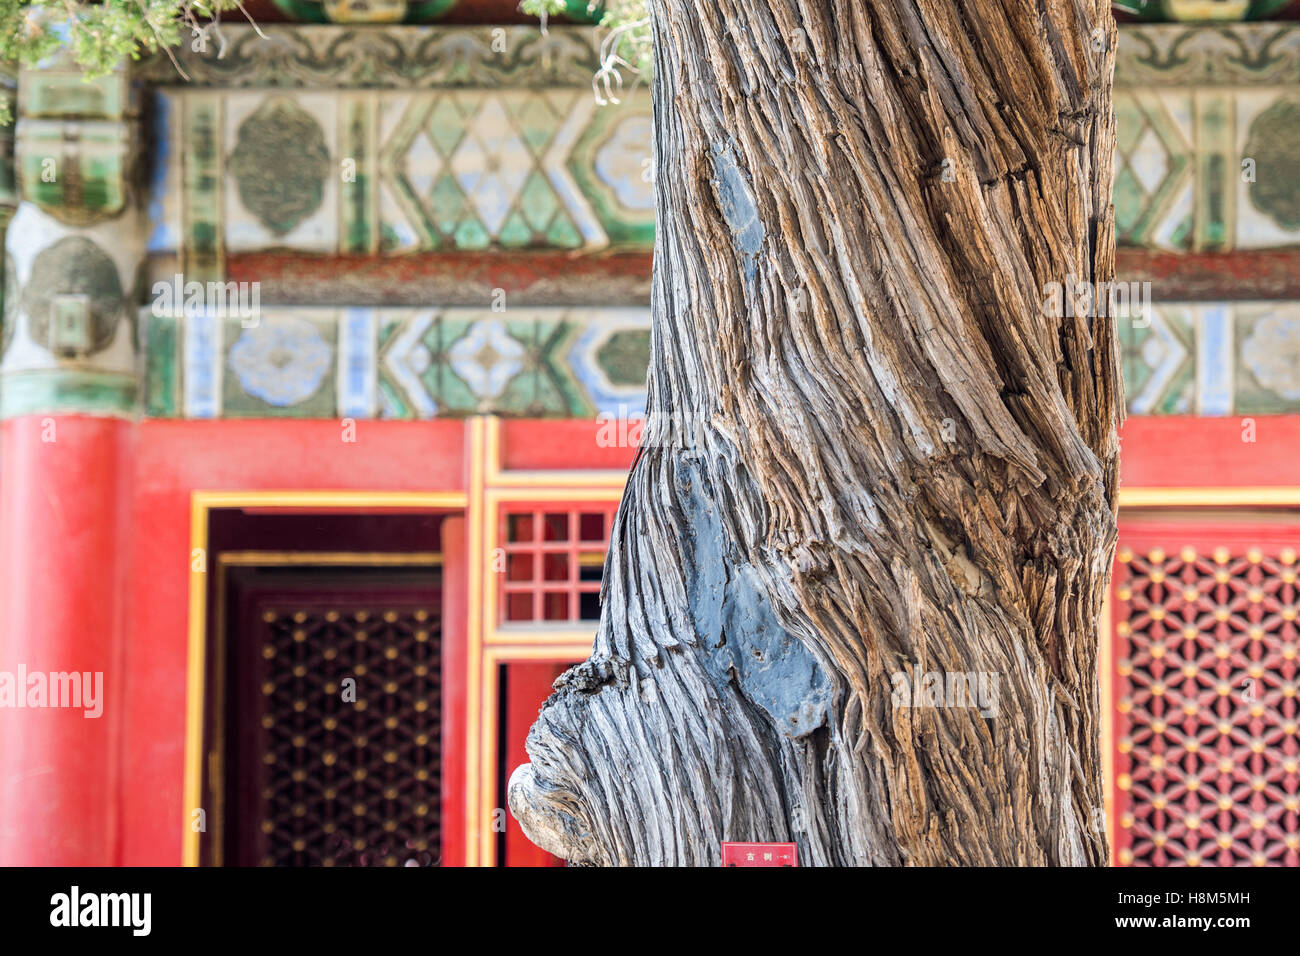 Pechino Cina - il Dettaglio di un albero di fronte all'architettura ornata di il museo del palazzo si trova nella città proibita. Foto Stock